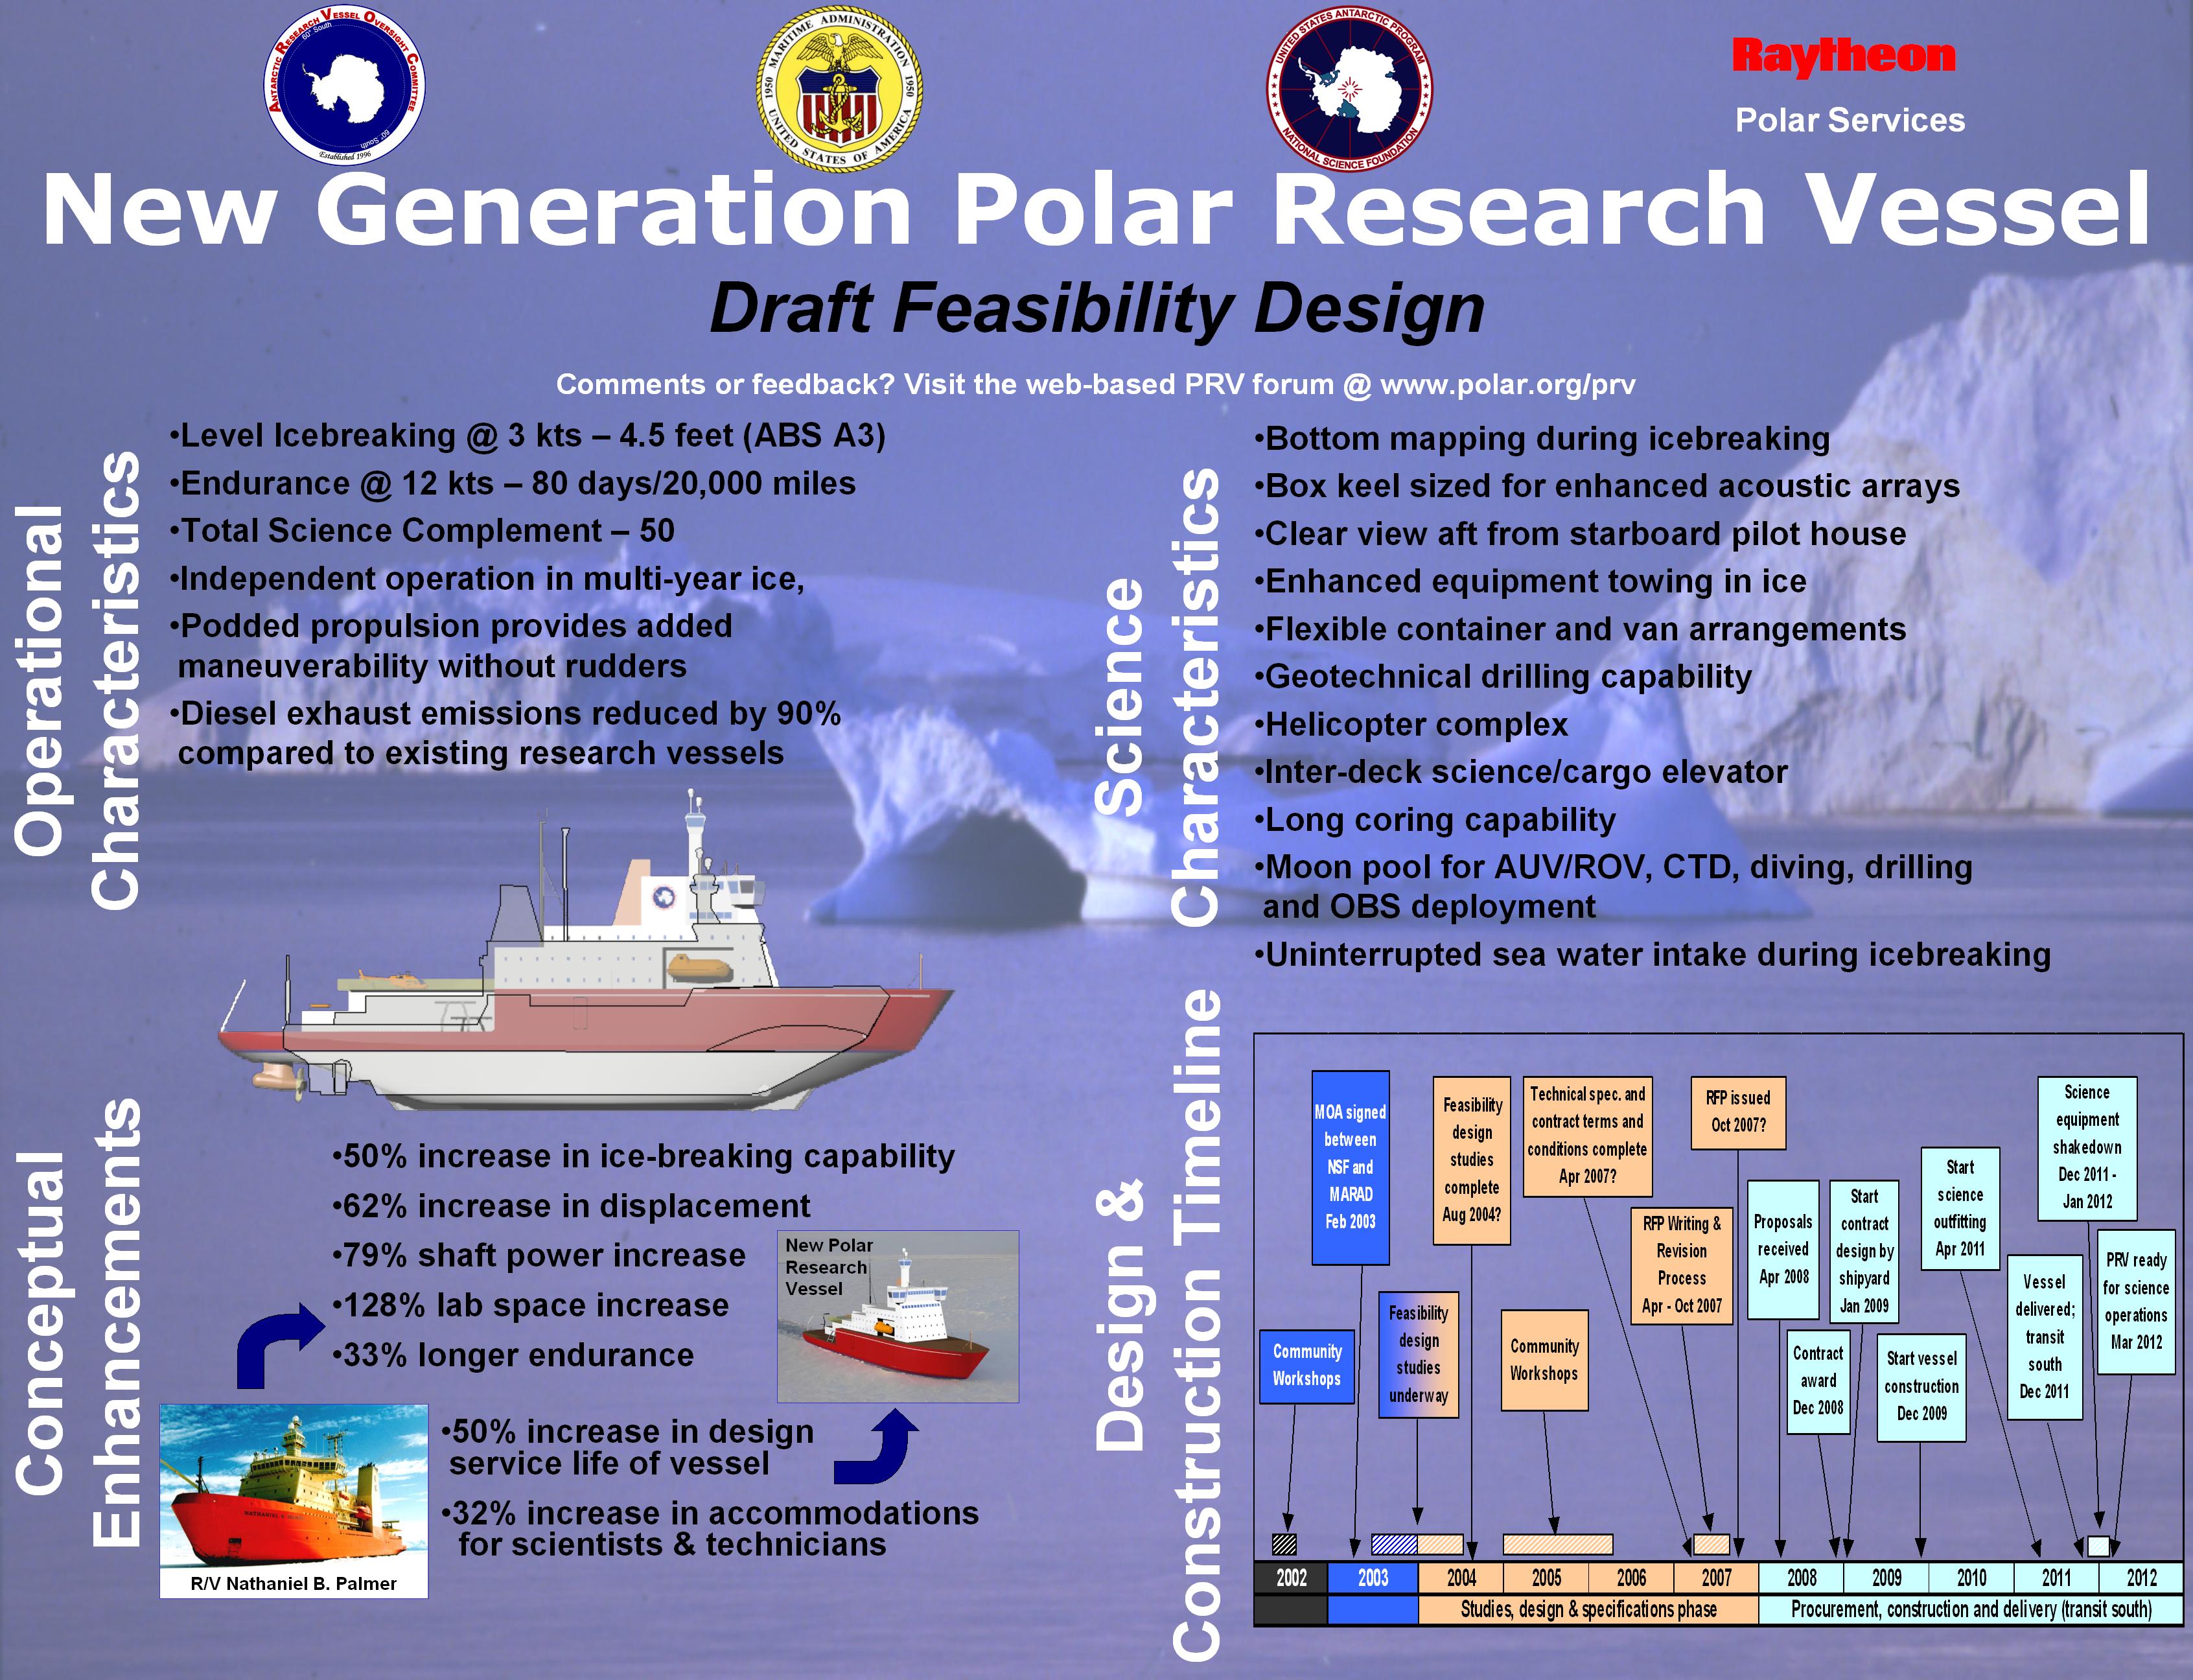 Clique na imagem para ampliar e saiba mais  sobre o programa Norte Americano NGPRV para a nova geração de navios polares dos EUA